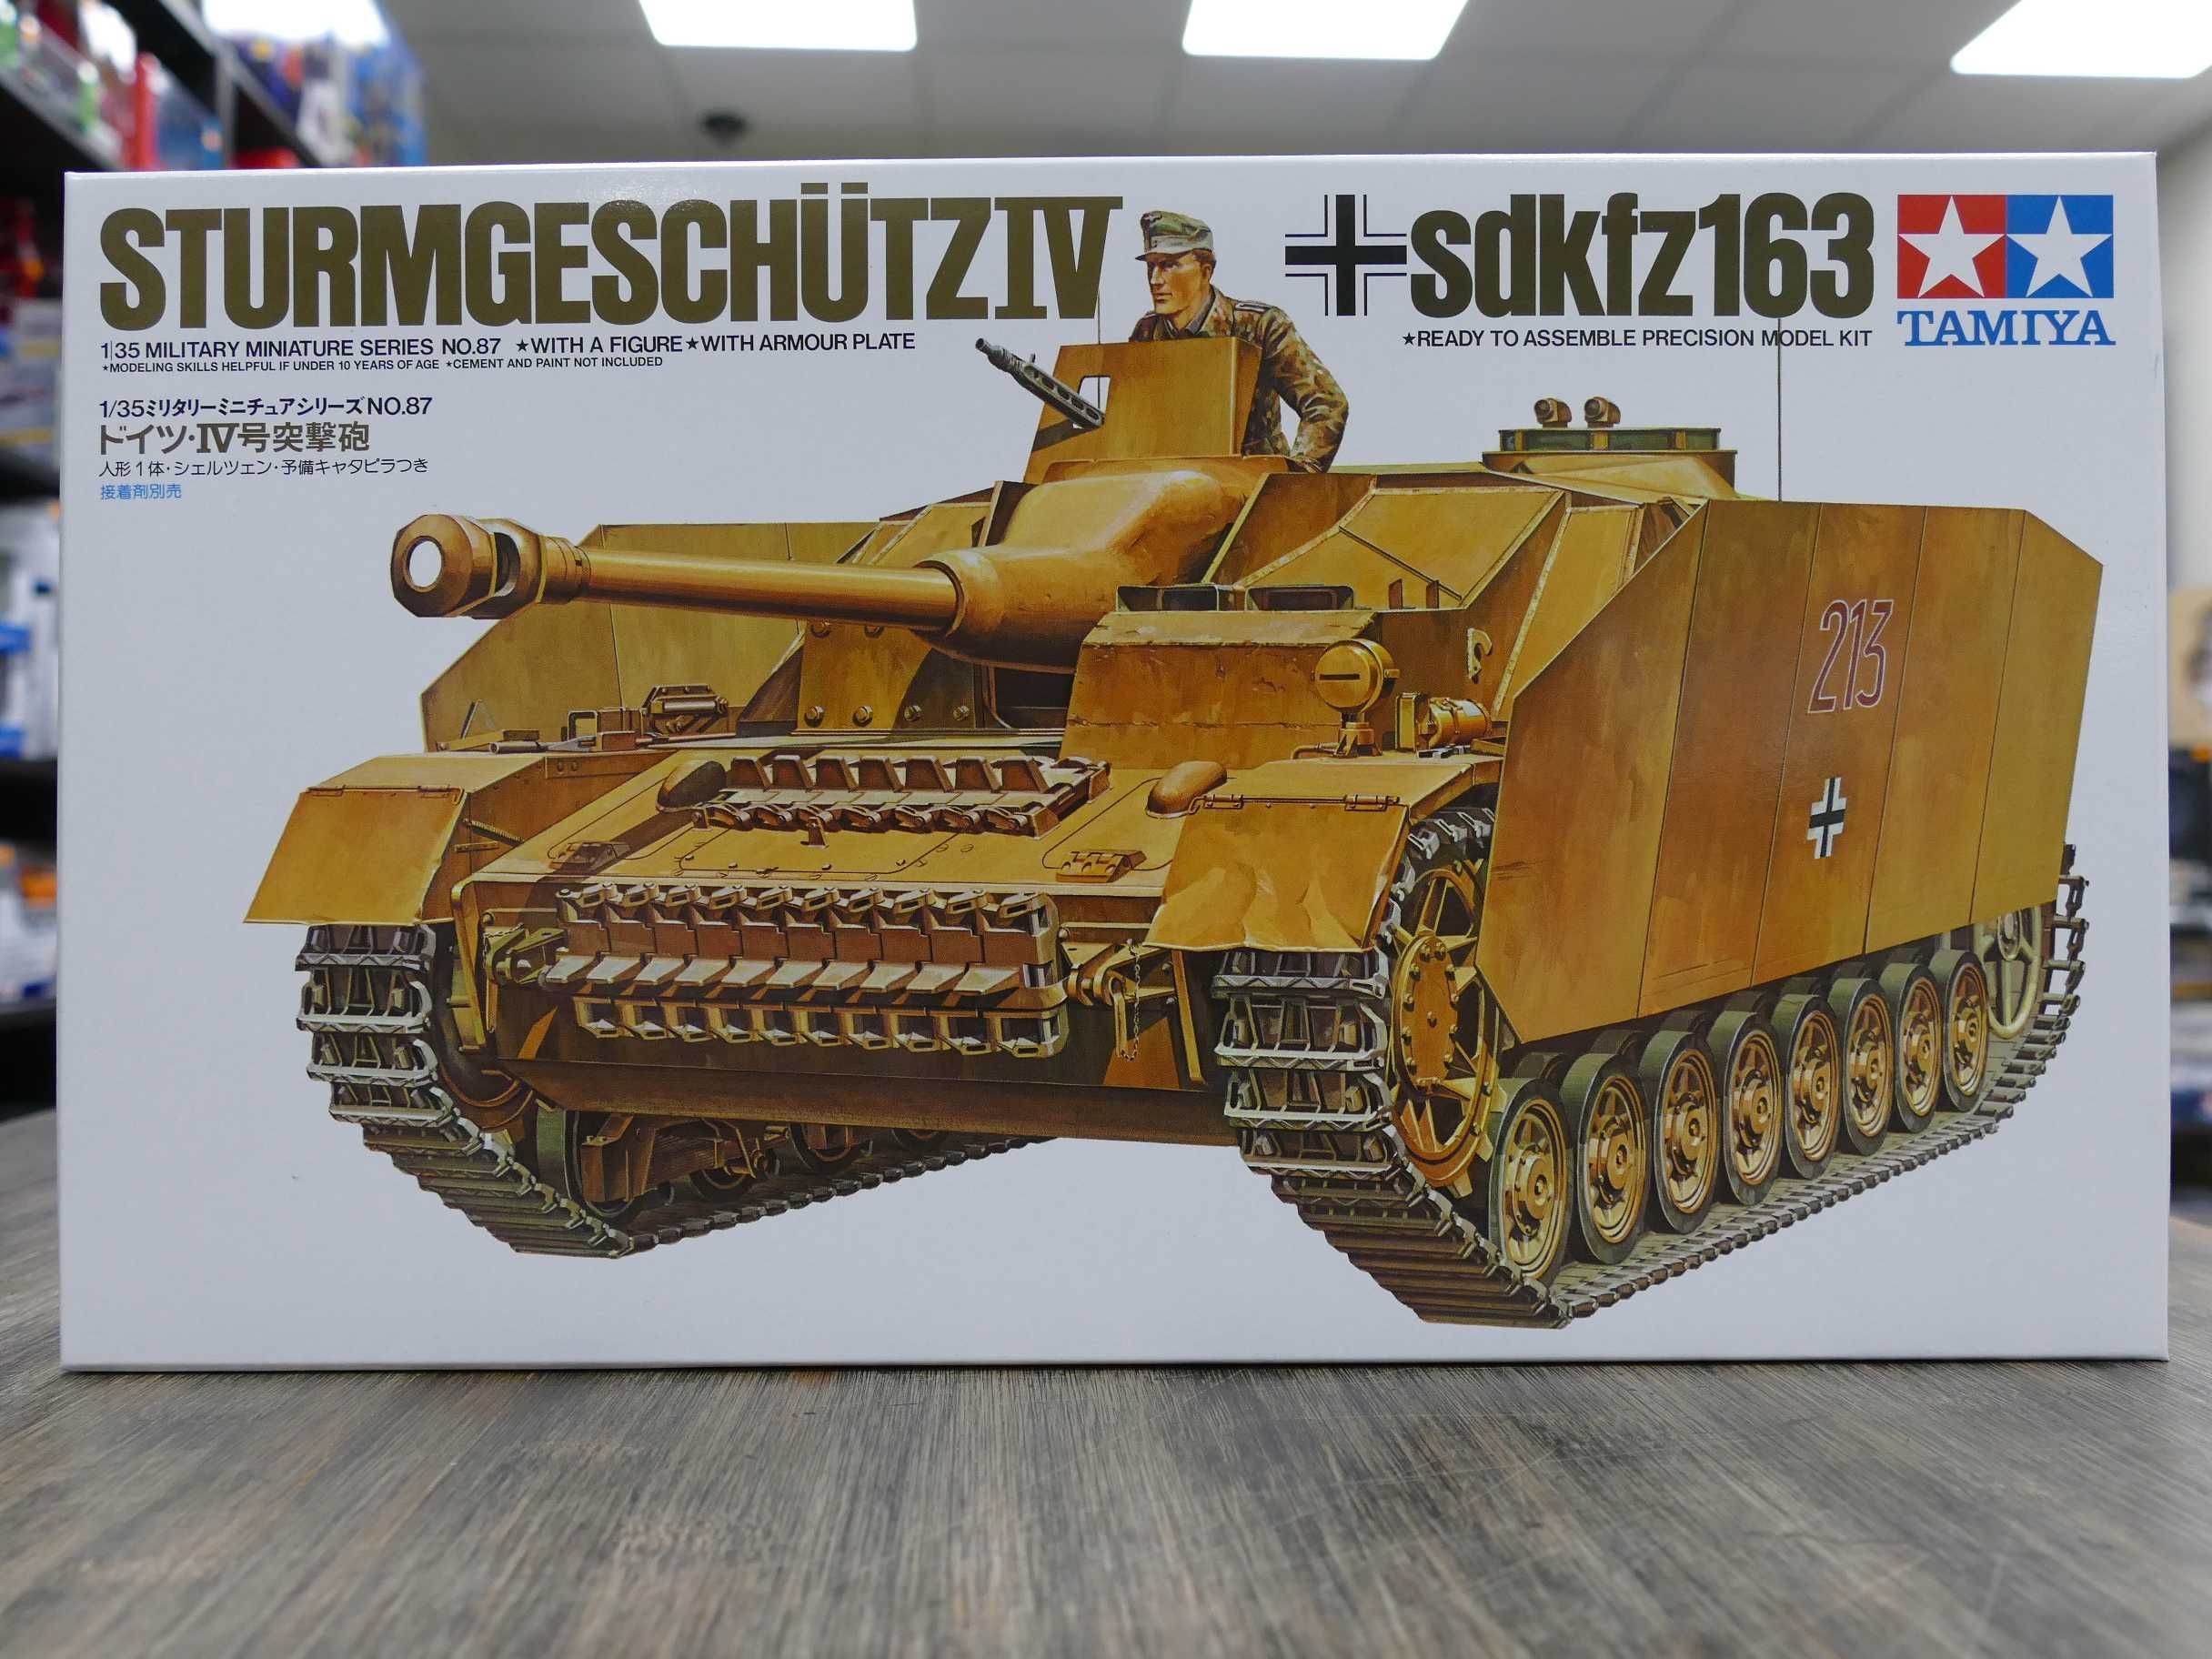 Nowy Tamiya Nr. 35087 Sturmgeschütz IV sdkfz163 1:35 Wrocław